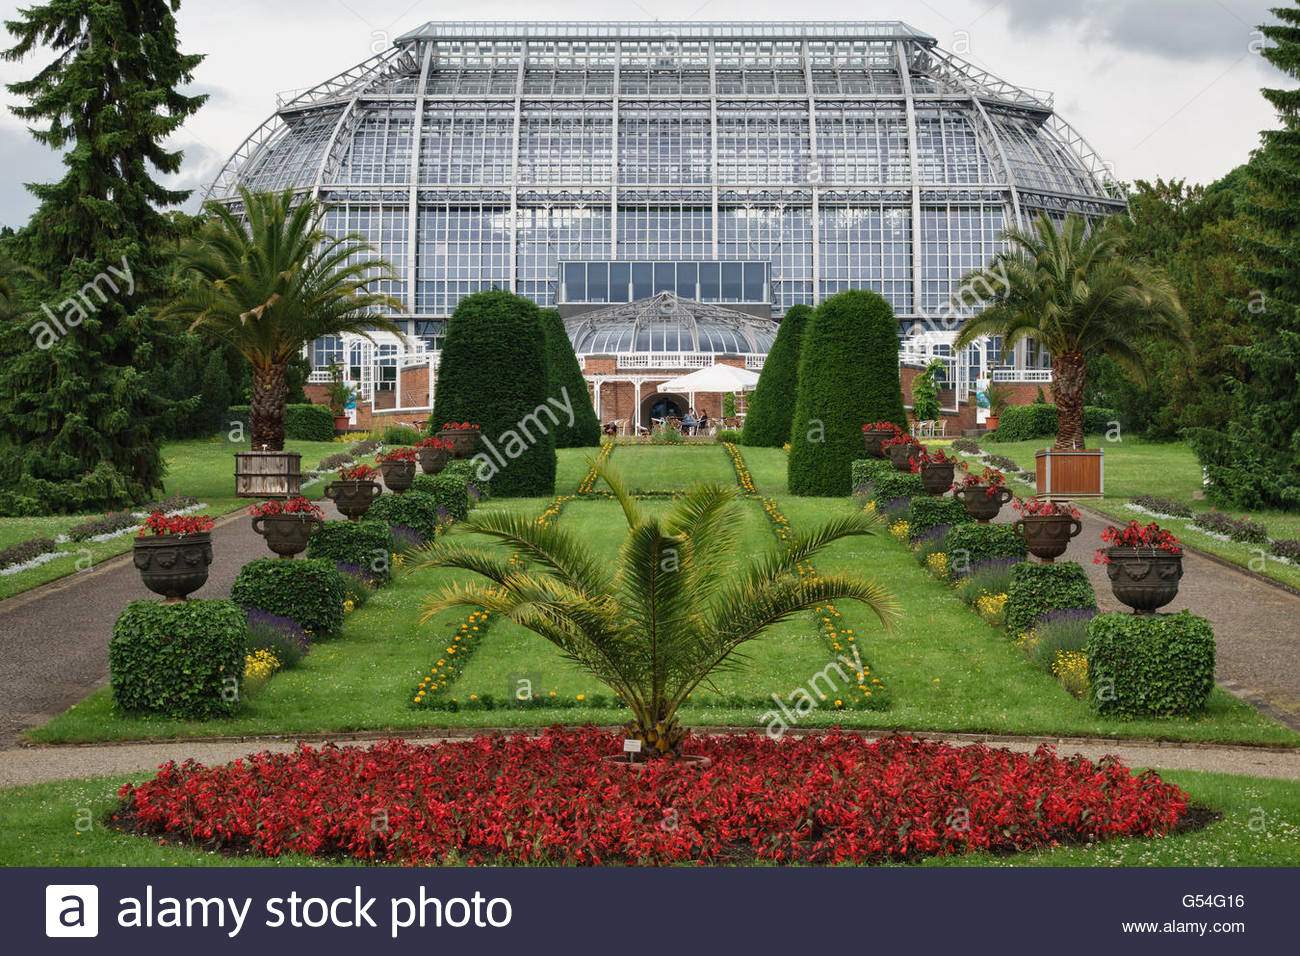 berlin deutschland der botanische garten berlin dahlem wichtigsten tropischen gewachshaus g54g16